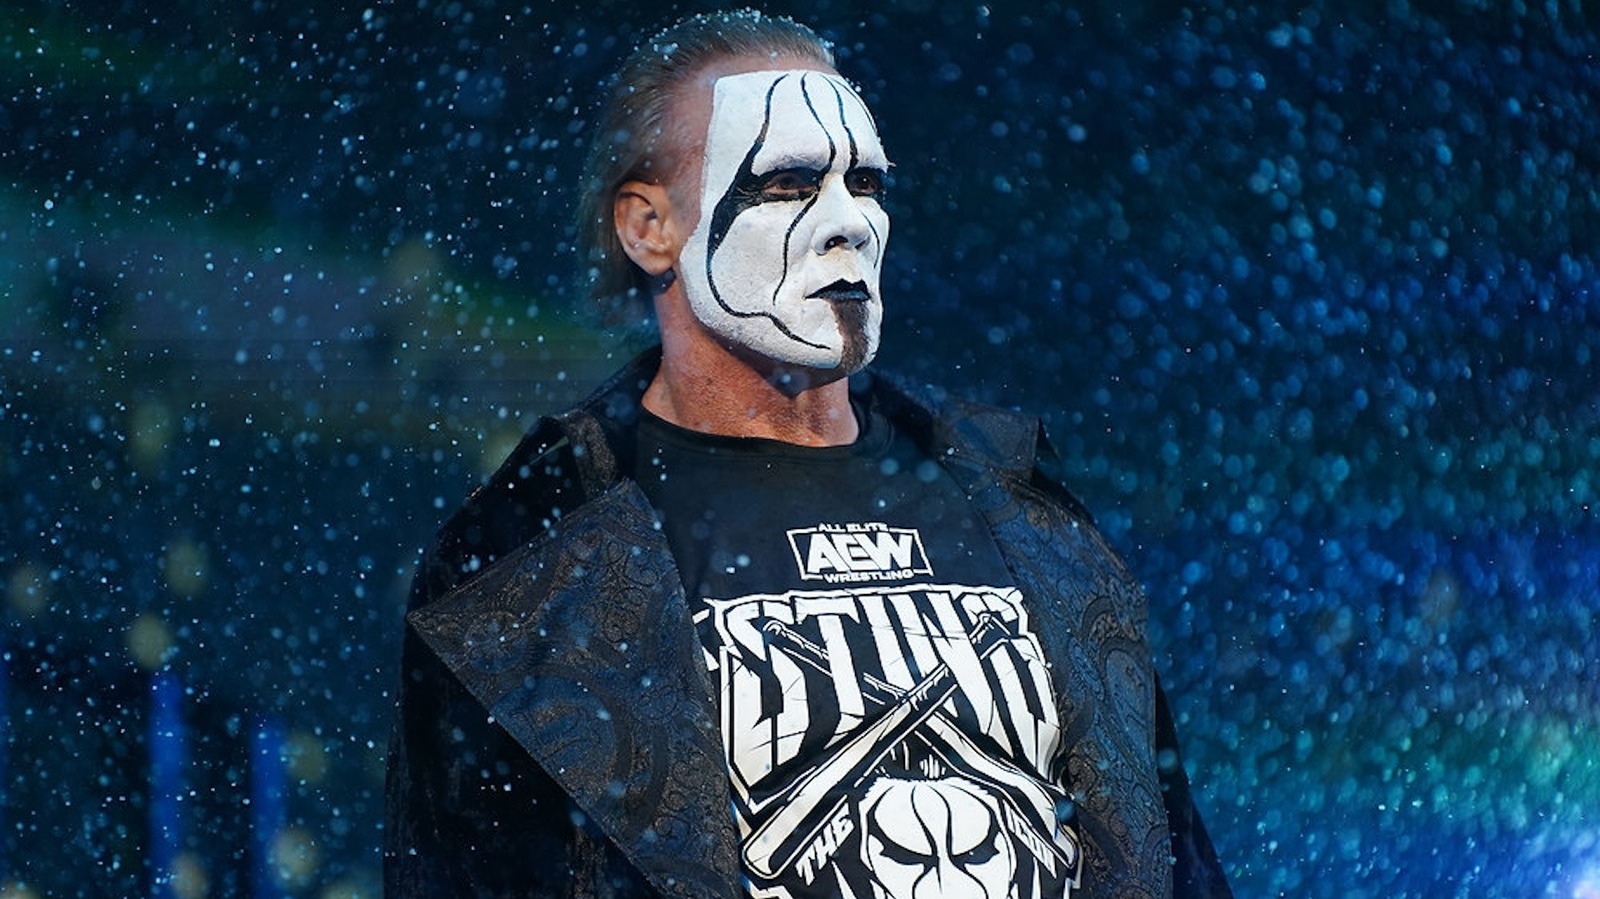 Sting explica qué lo ha mantenido activo en la lucha libre durante tanto tiempo